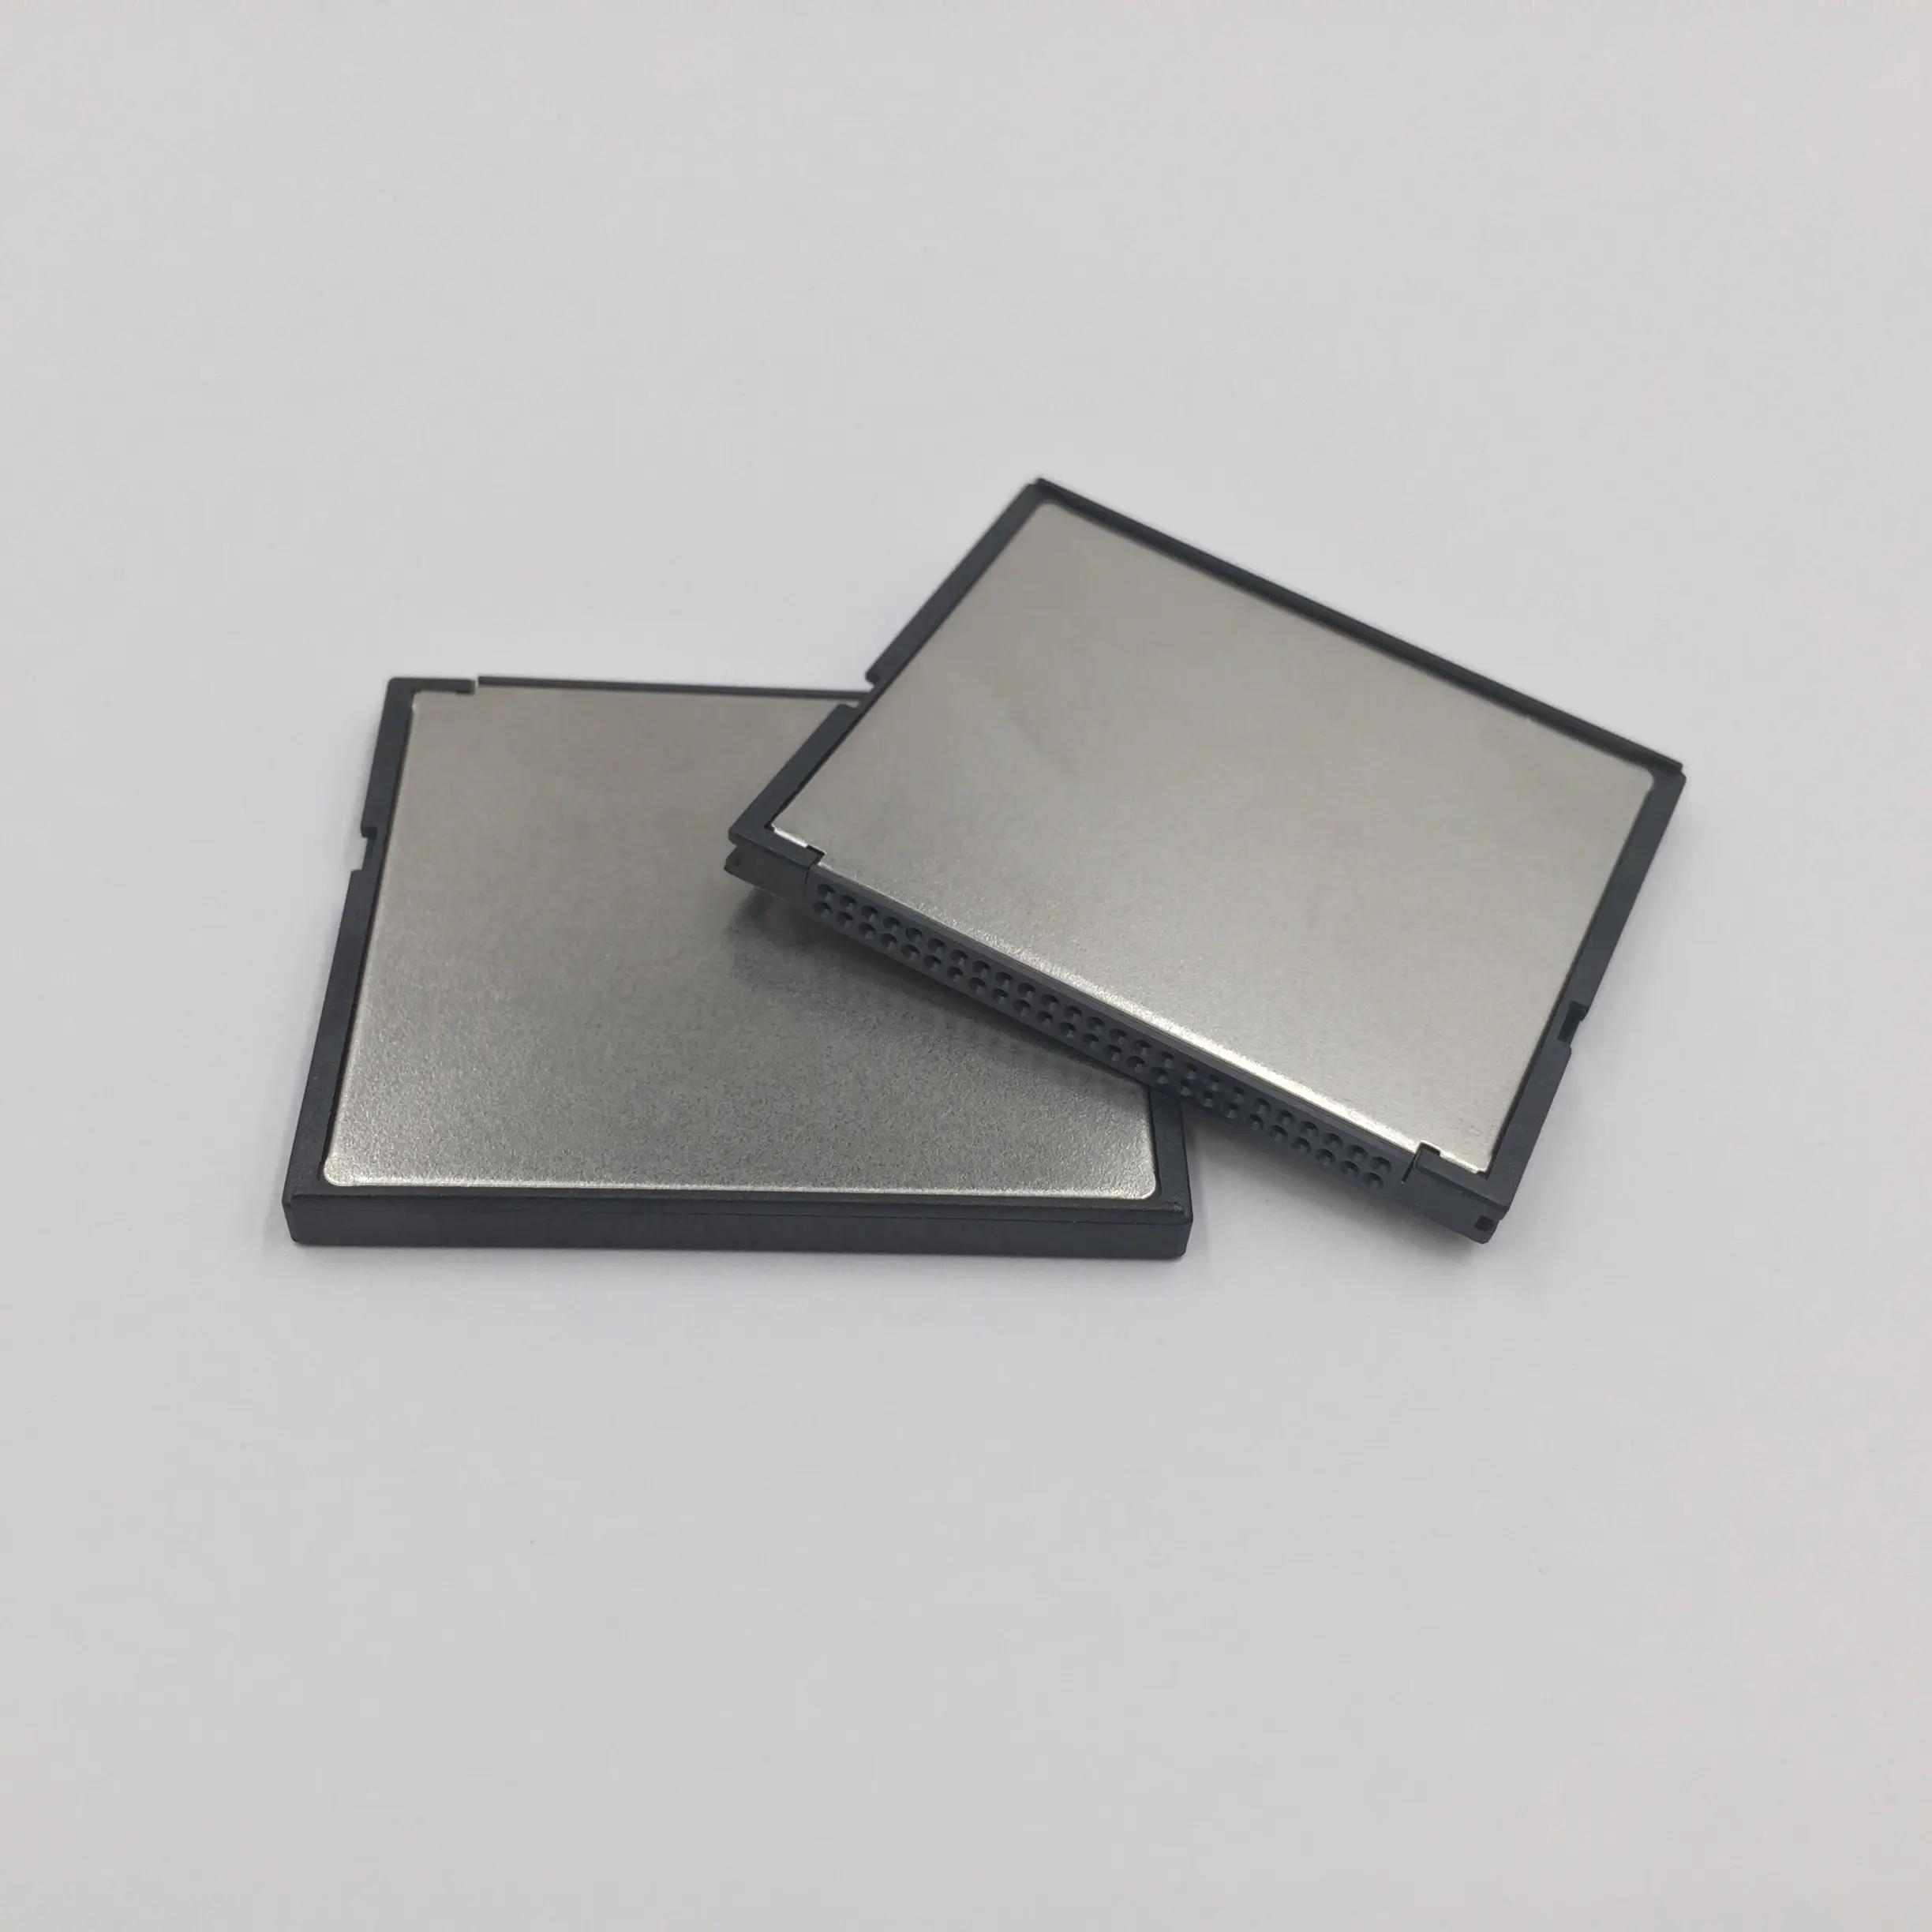 Fabbrica di Qualità Originale 2GB CF Card Scheda di memoria CF Compact Flash Scheda di Memoria